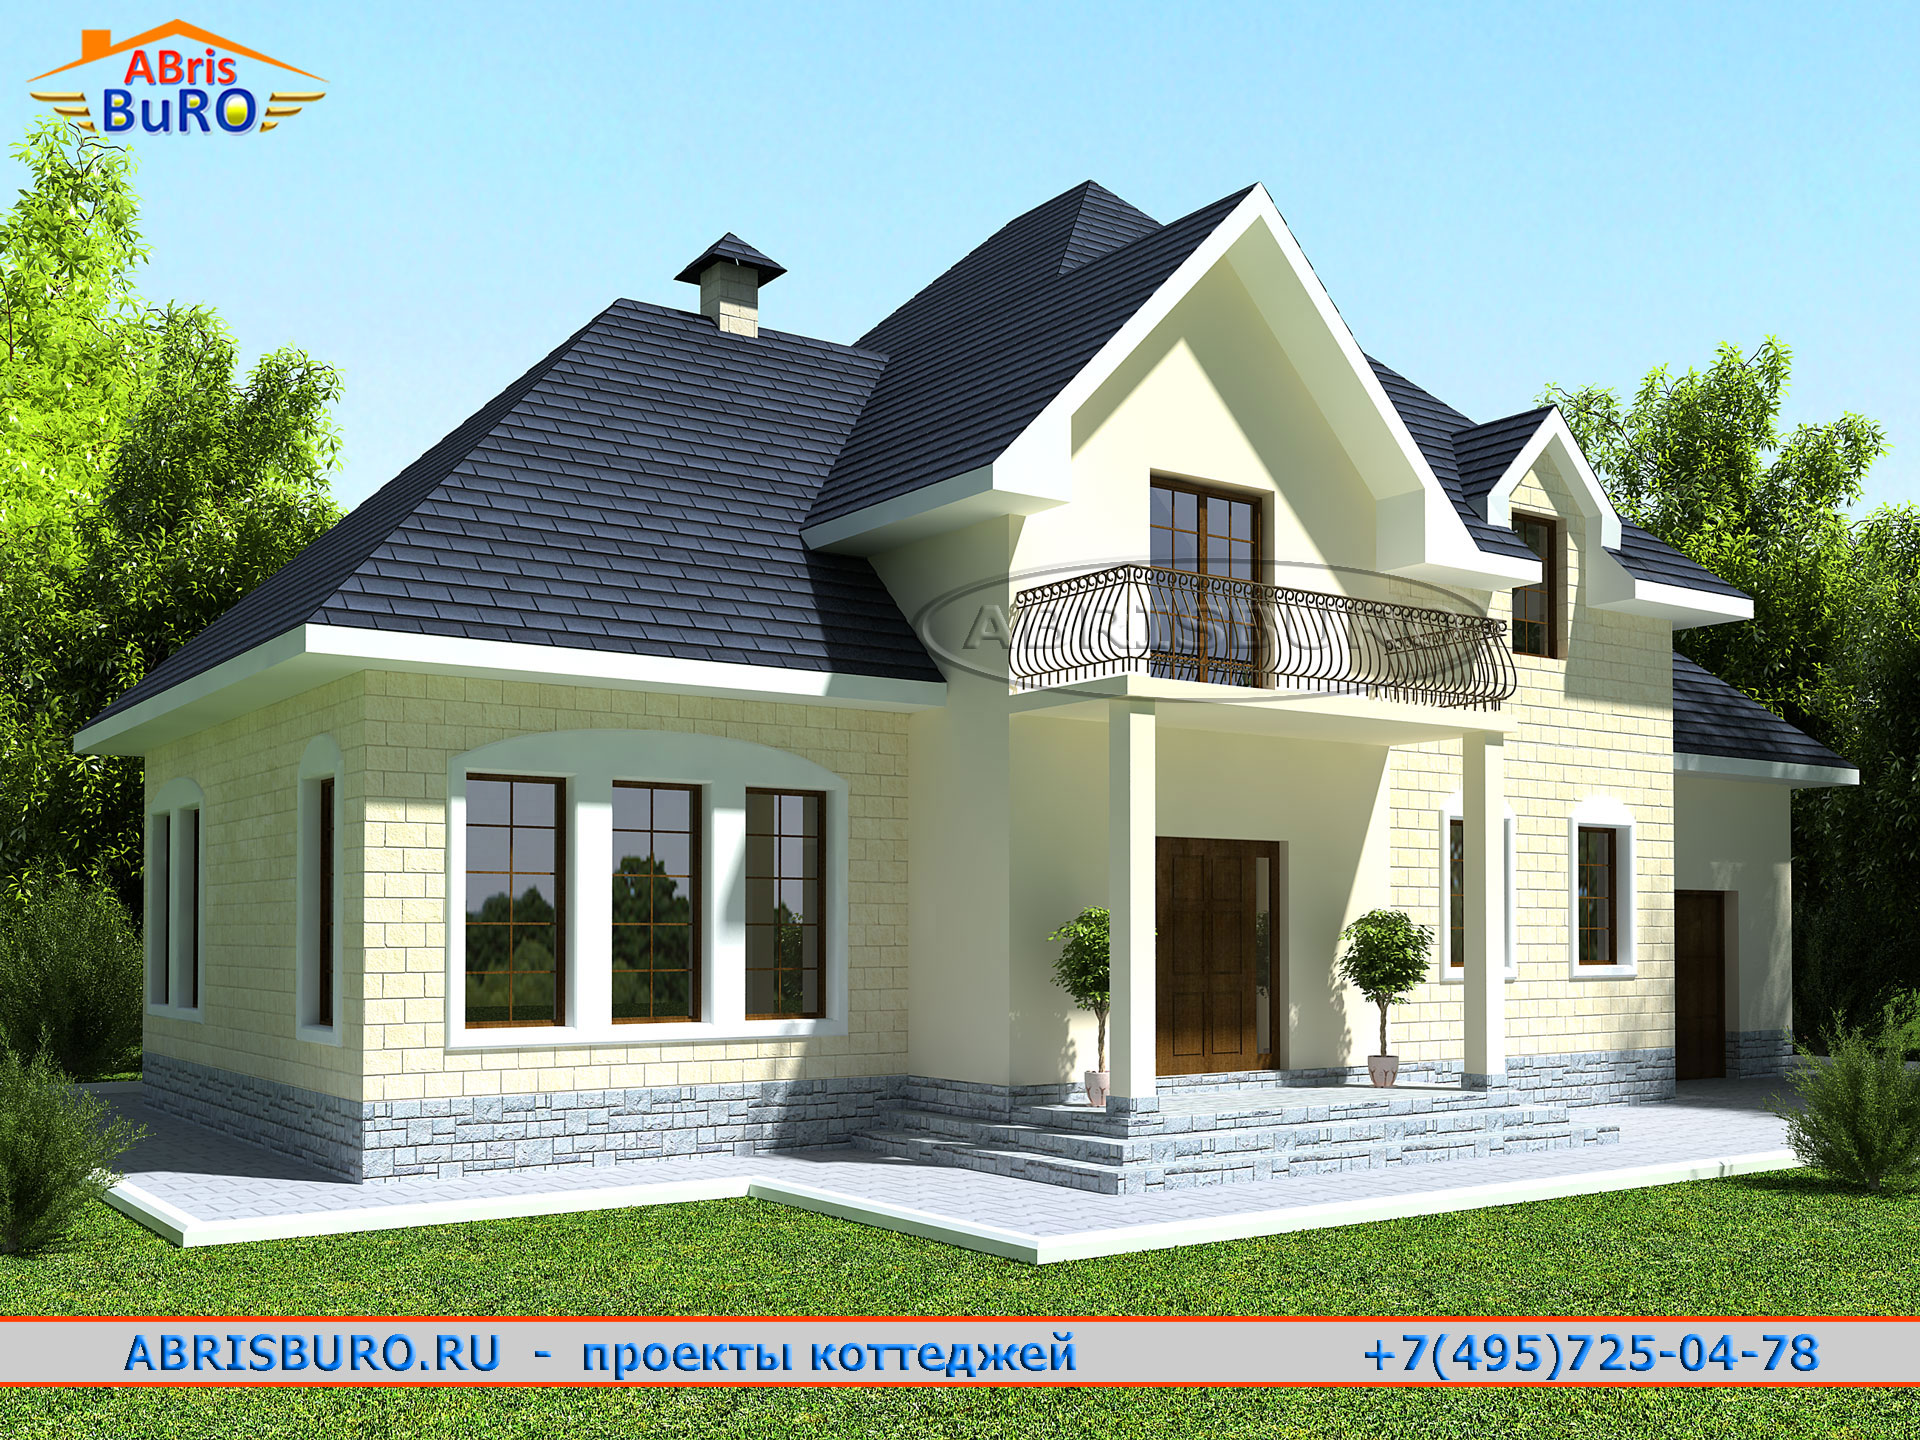 Популярный проект дома К8-230 на сайте архитектурной фирмы AbrisBURO.ru - ПРОЕКТЫ КОТТЕДЖЕЙ